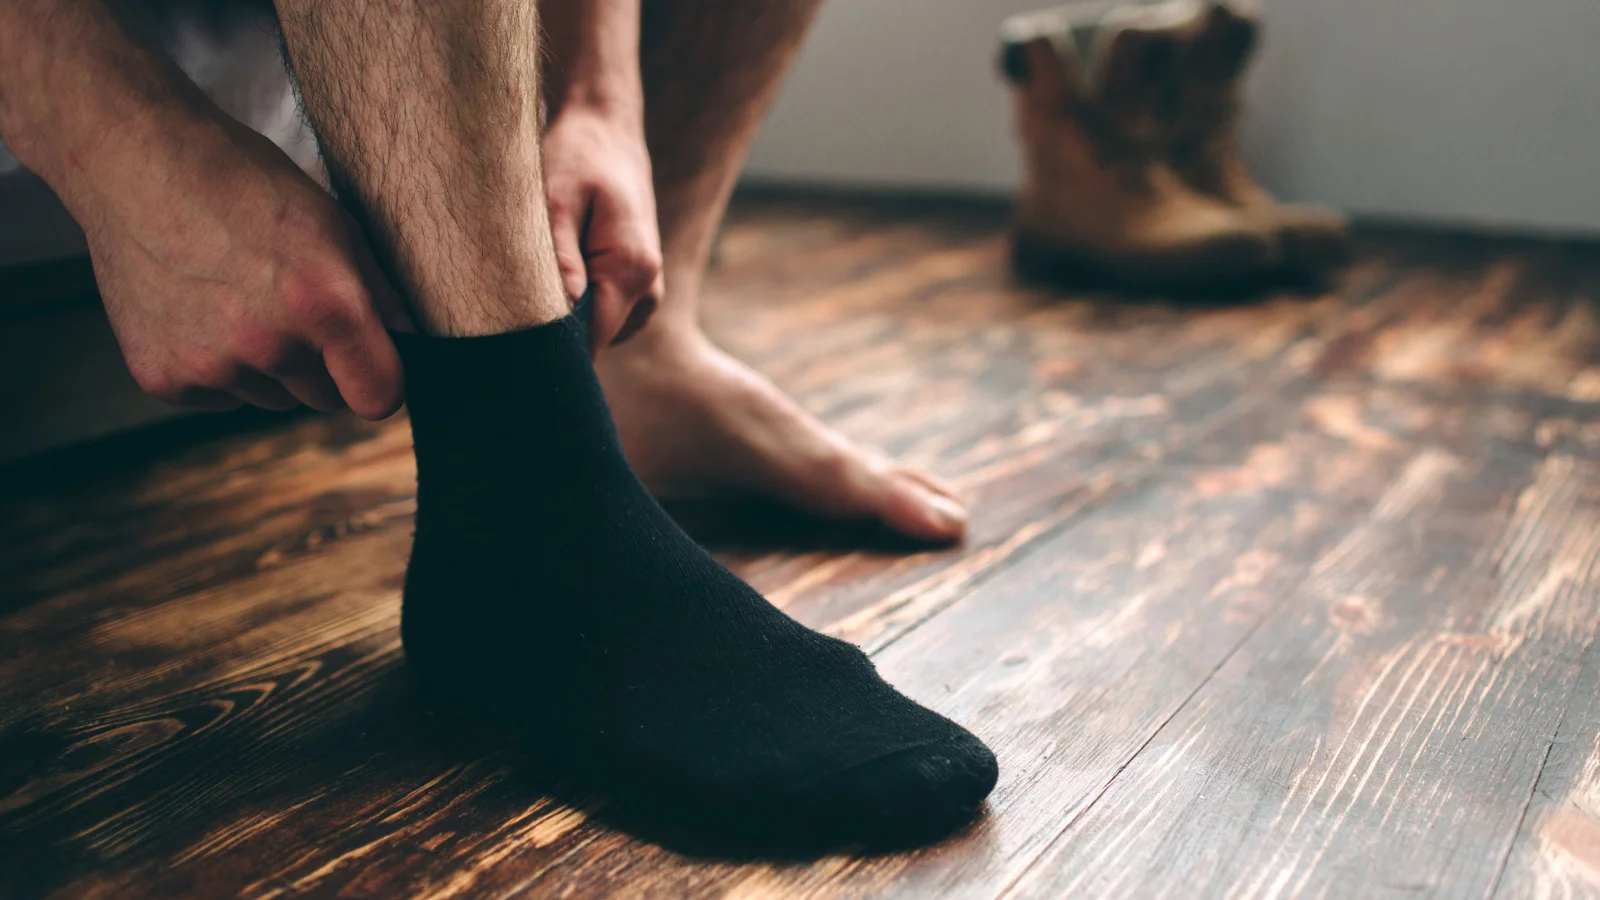 جوراب مردانه و نحوه ست کردن کردن آن